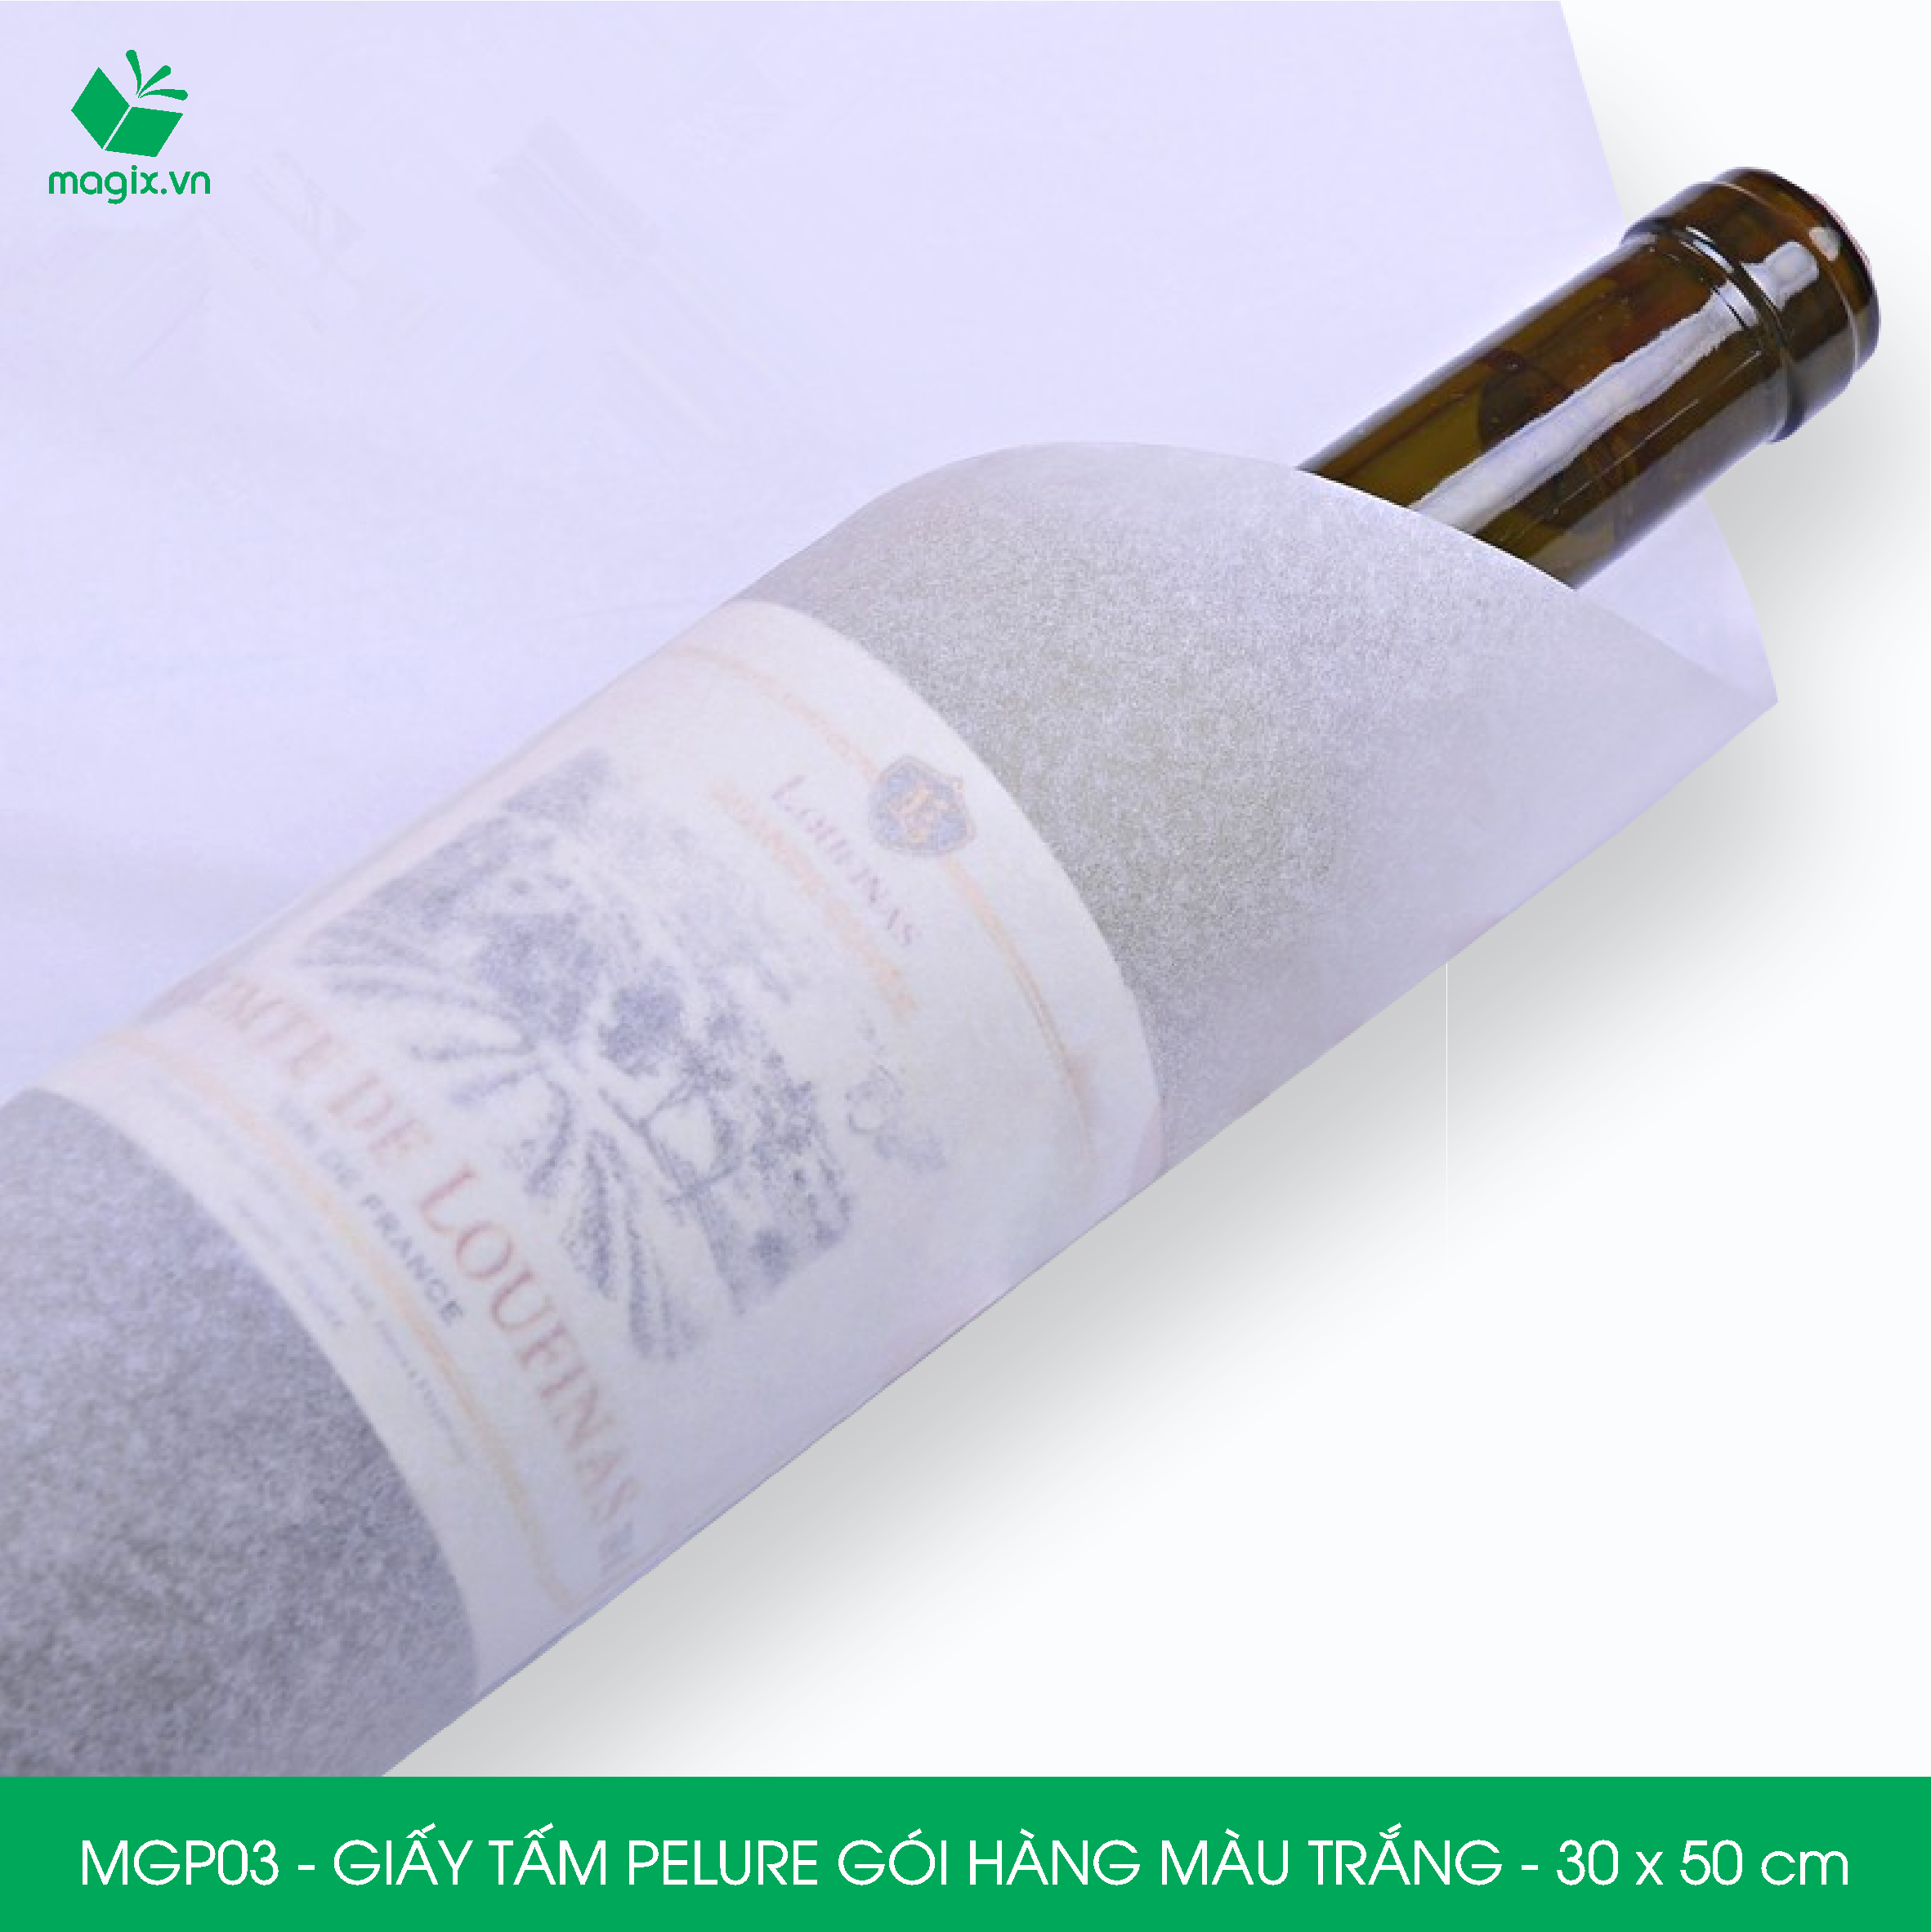 MGP03 - 30x50 cm - 1000 tấm giấy Pelure trắng gói hàng, giấy chống ẩm 2 mặt mịn, giấy bọc hàng thời trang